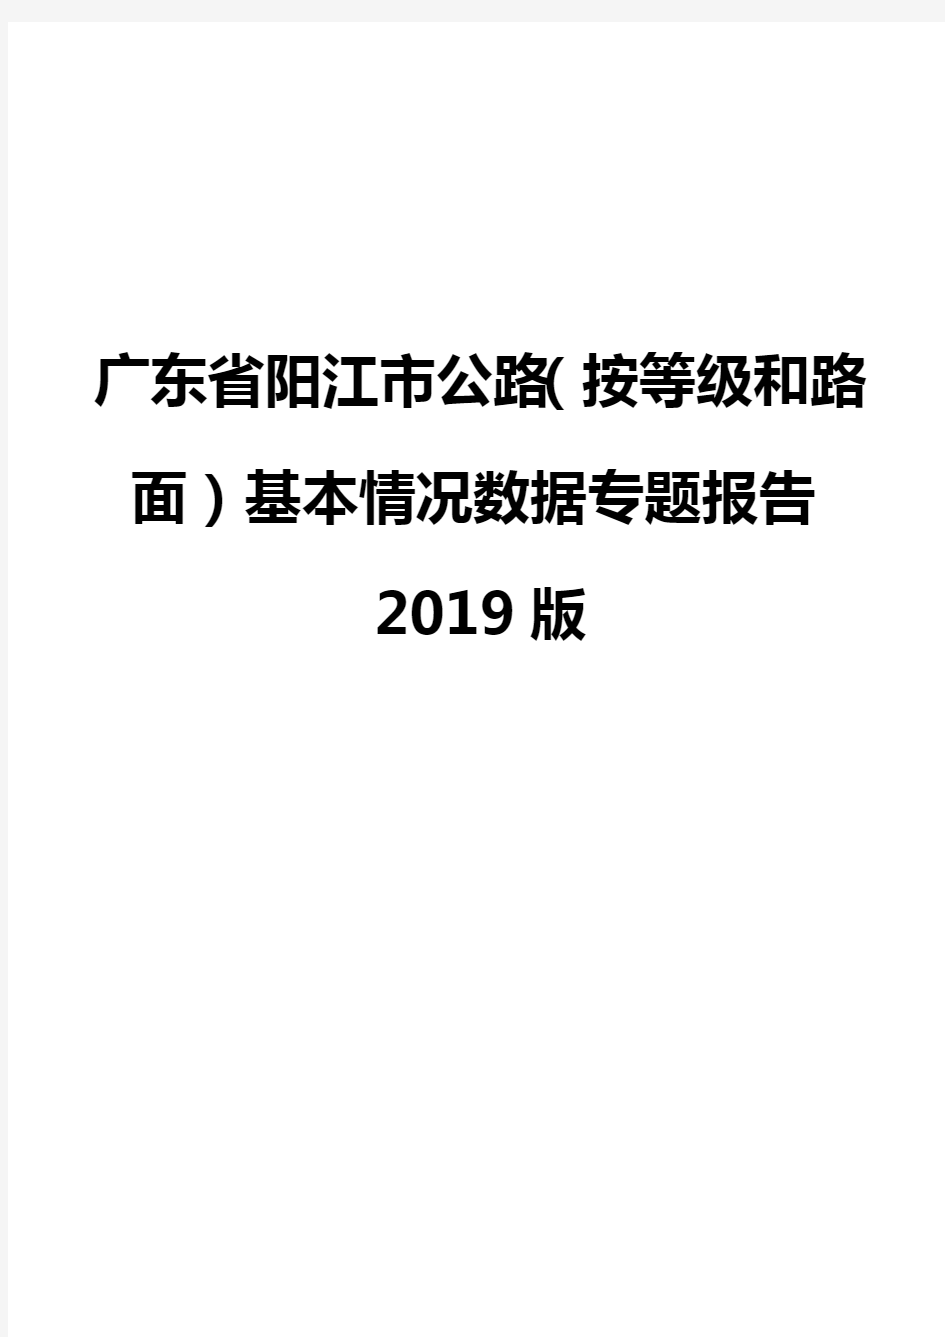 广东省阳江市公路(按等级和路面)基本情况数据专题报告2019版